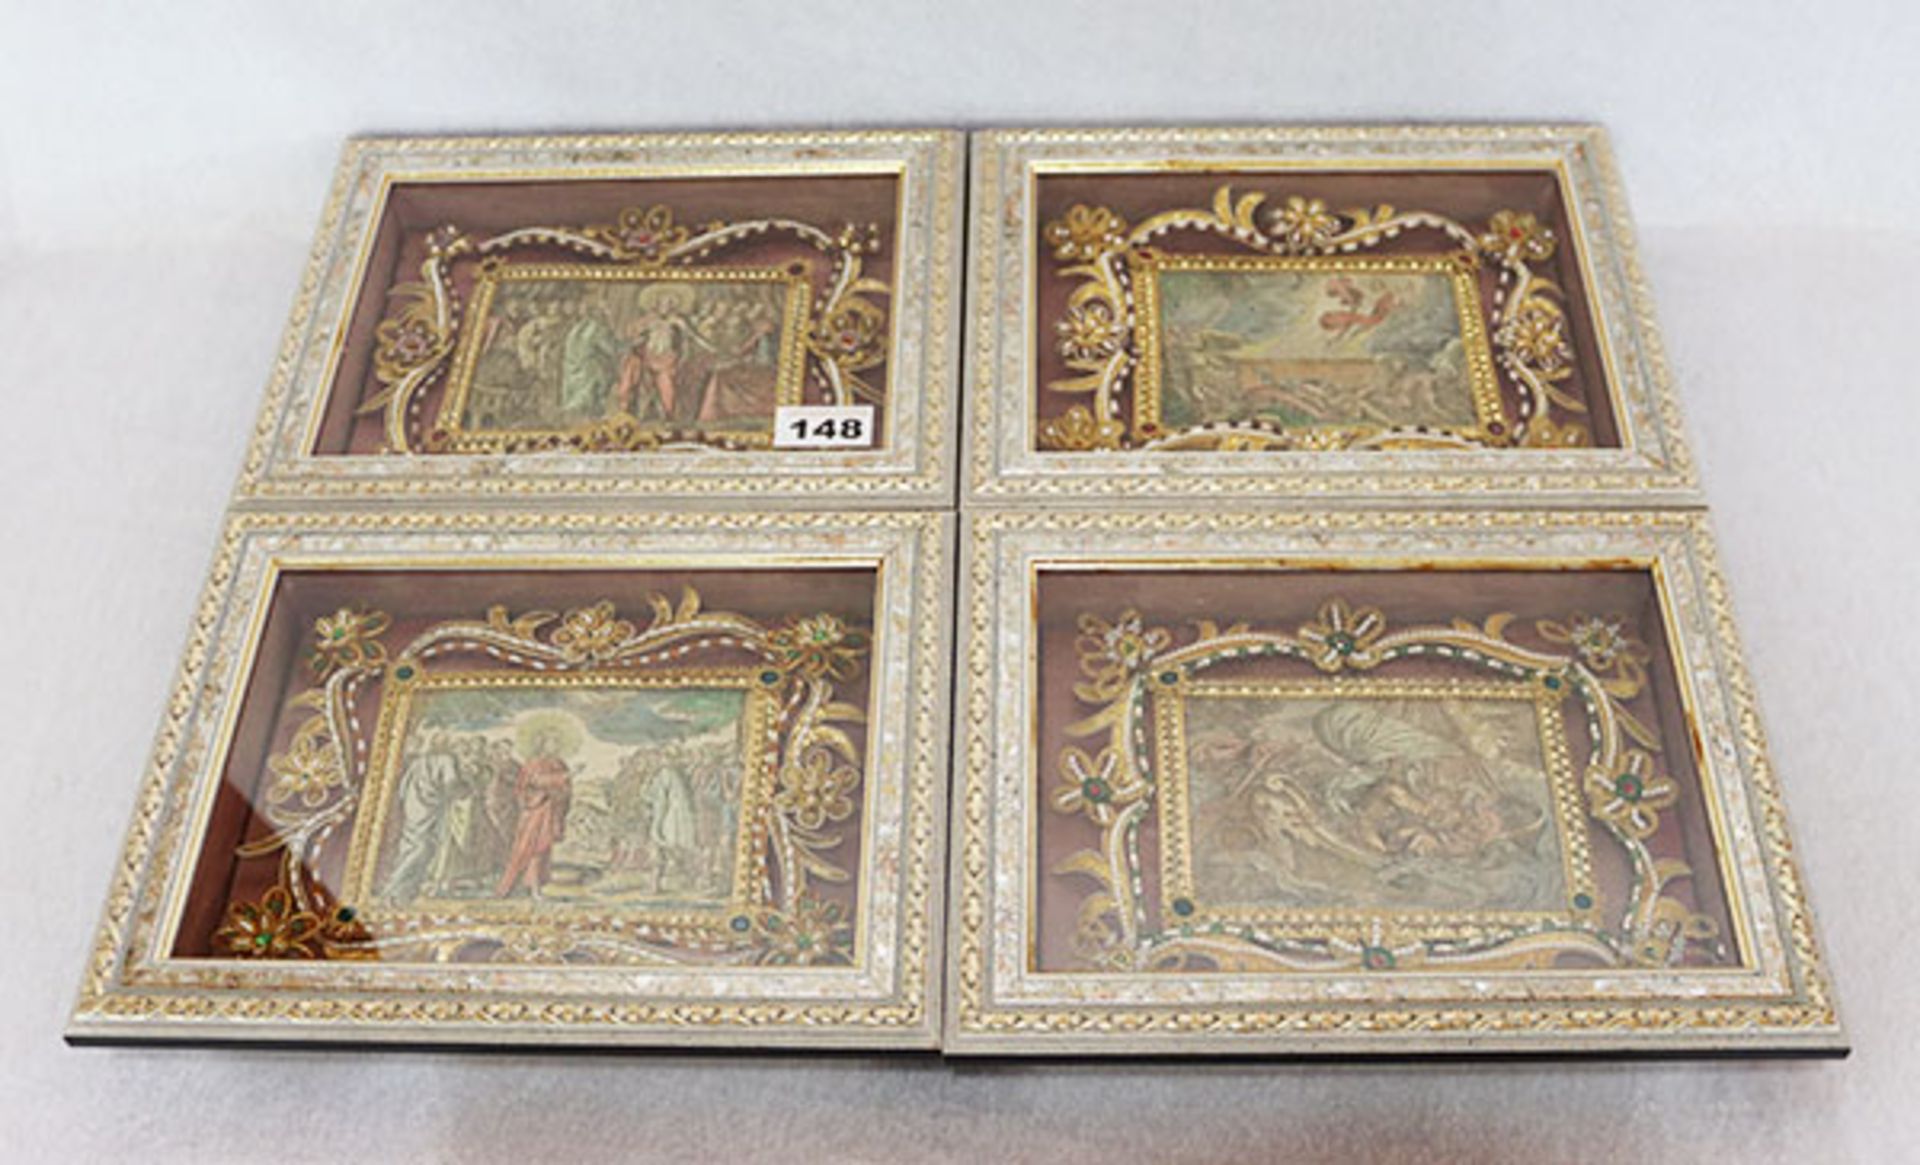 4 Klosterarbeiten mit religiösen Bildern, fein verziert, unter Glas gerahmt, incl. Rahmen 22 cm x 28